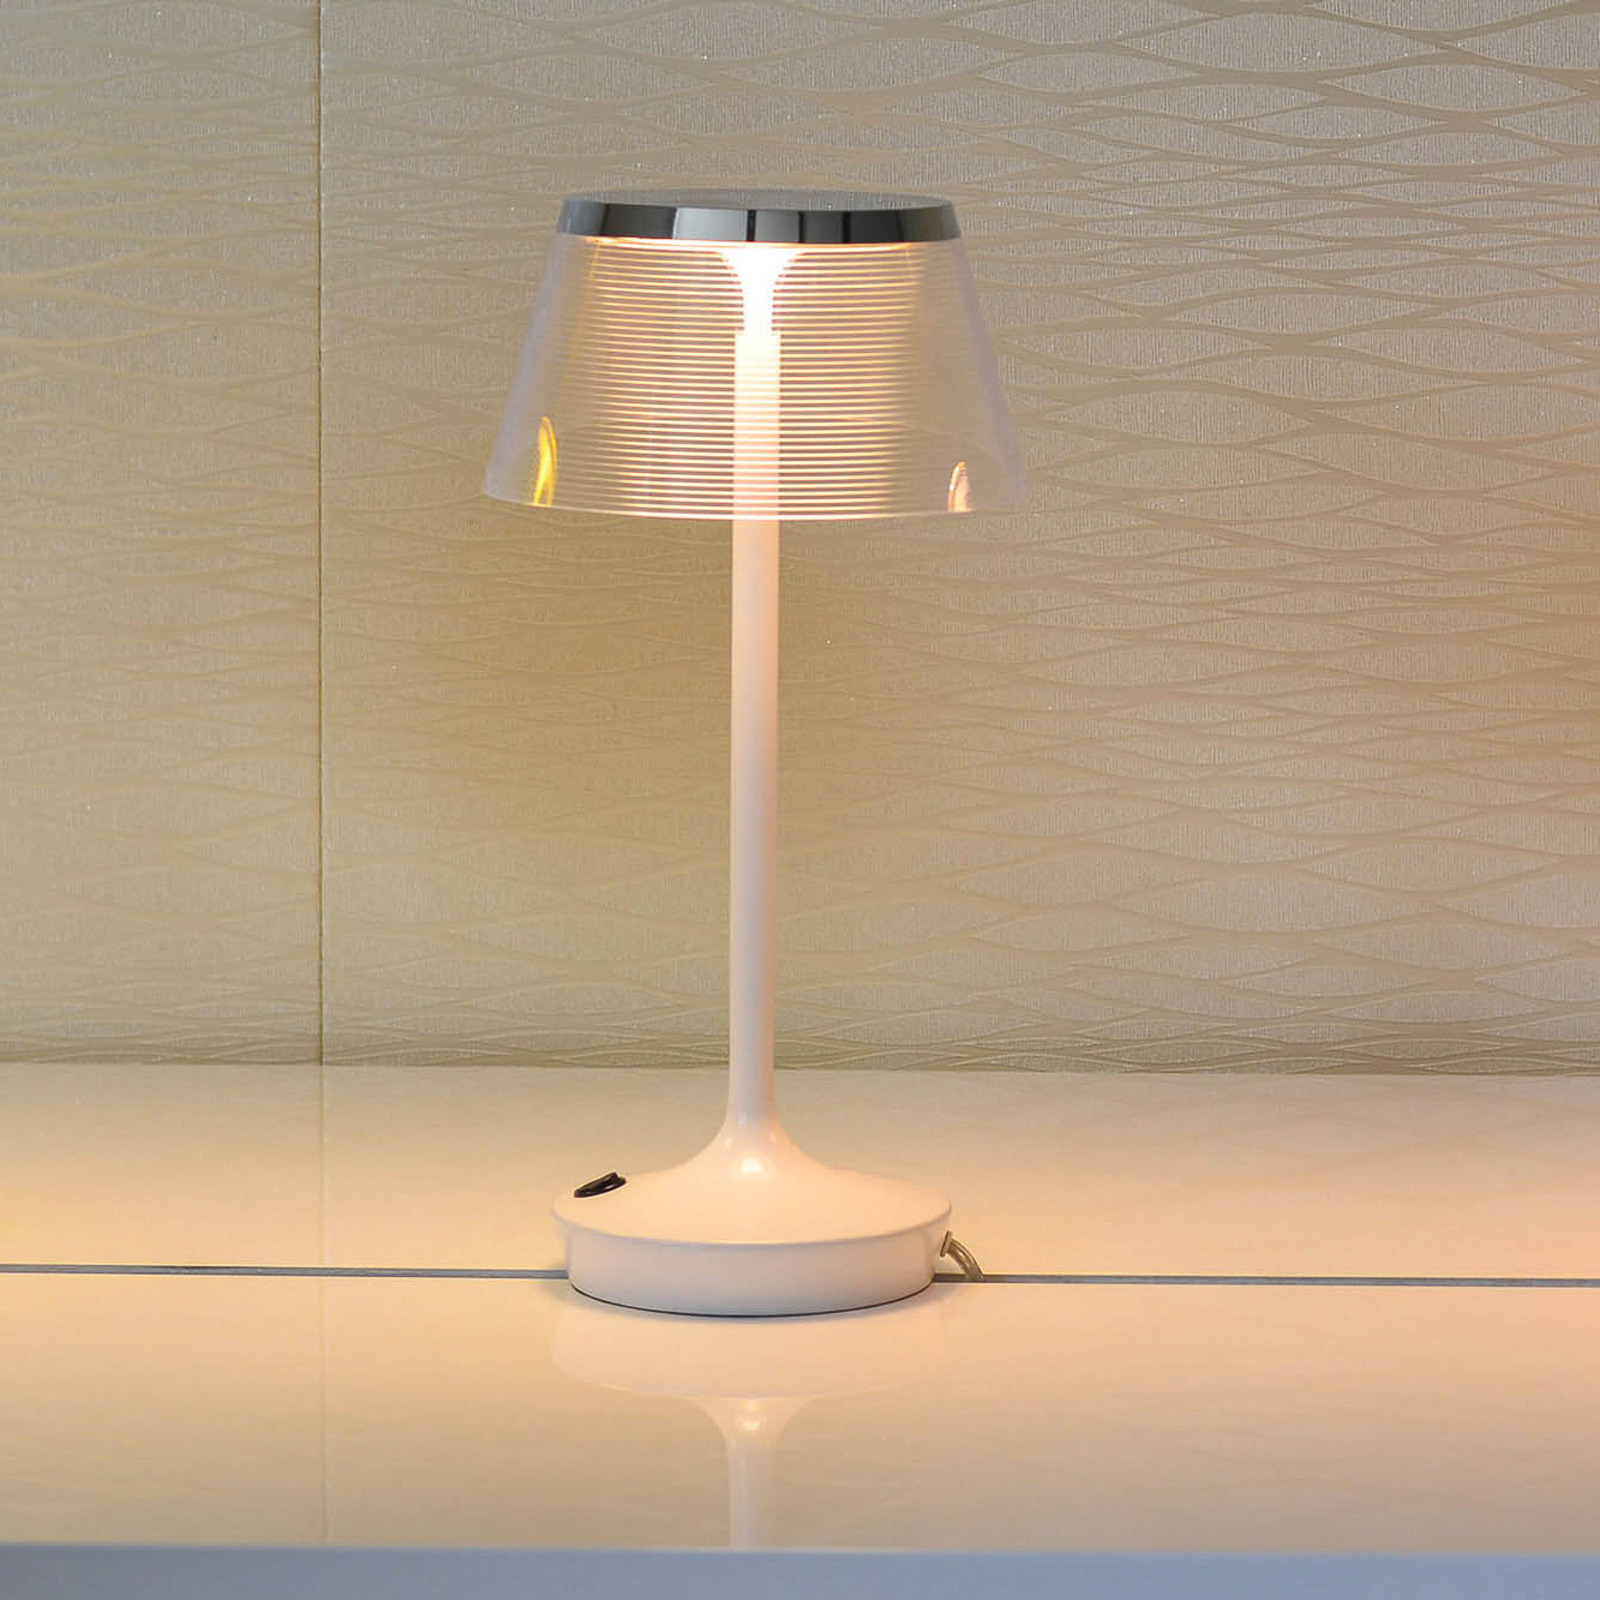 Aluminor La Petite Lampe LED stolní lampa, bílá